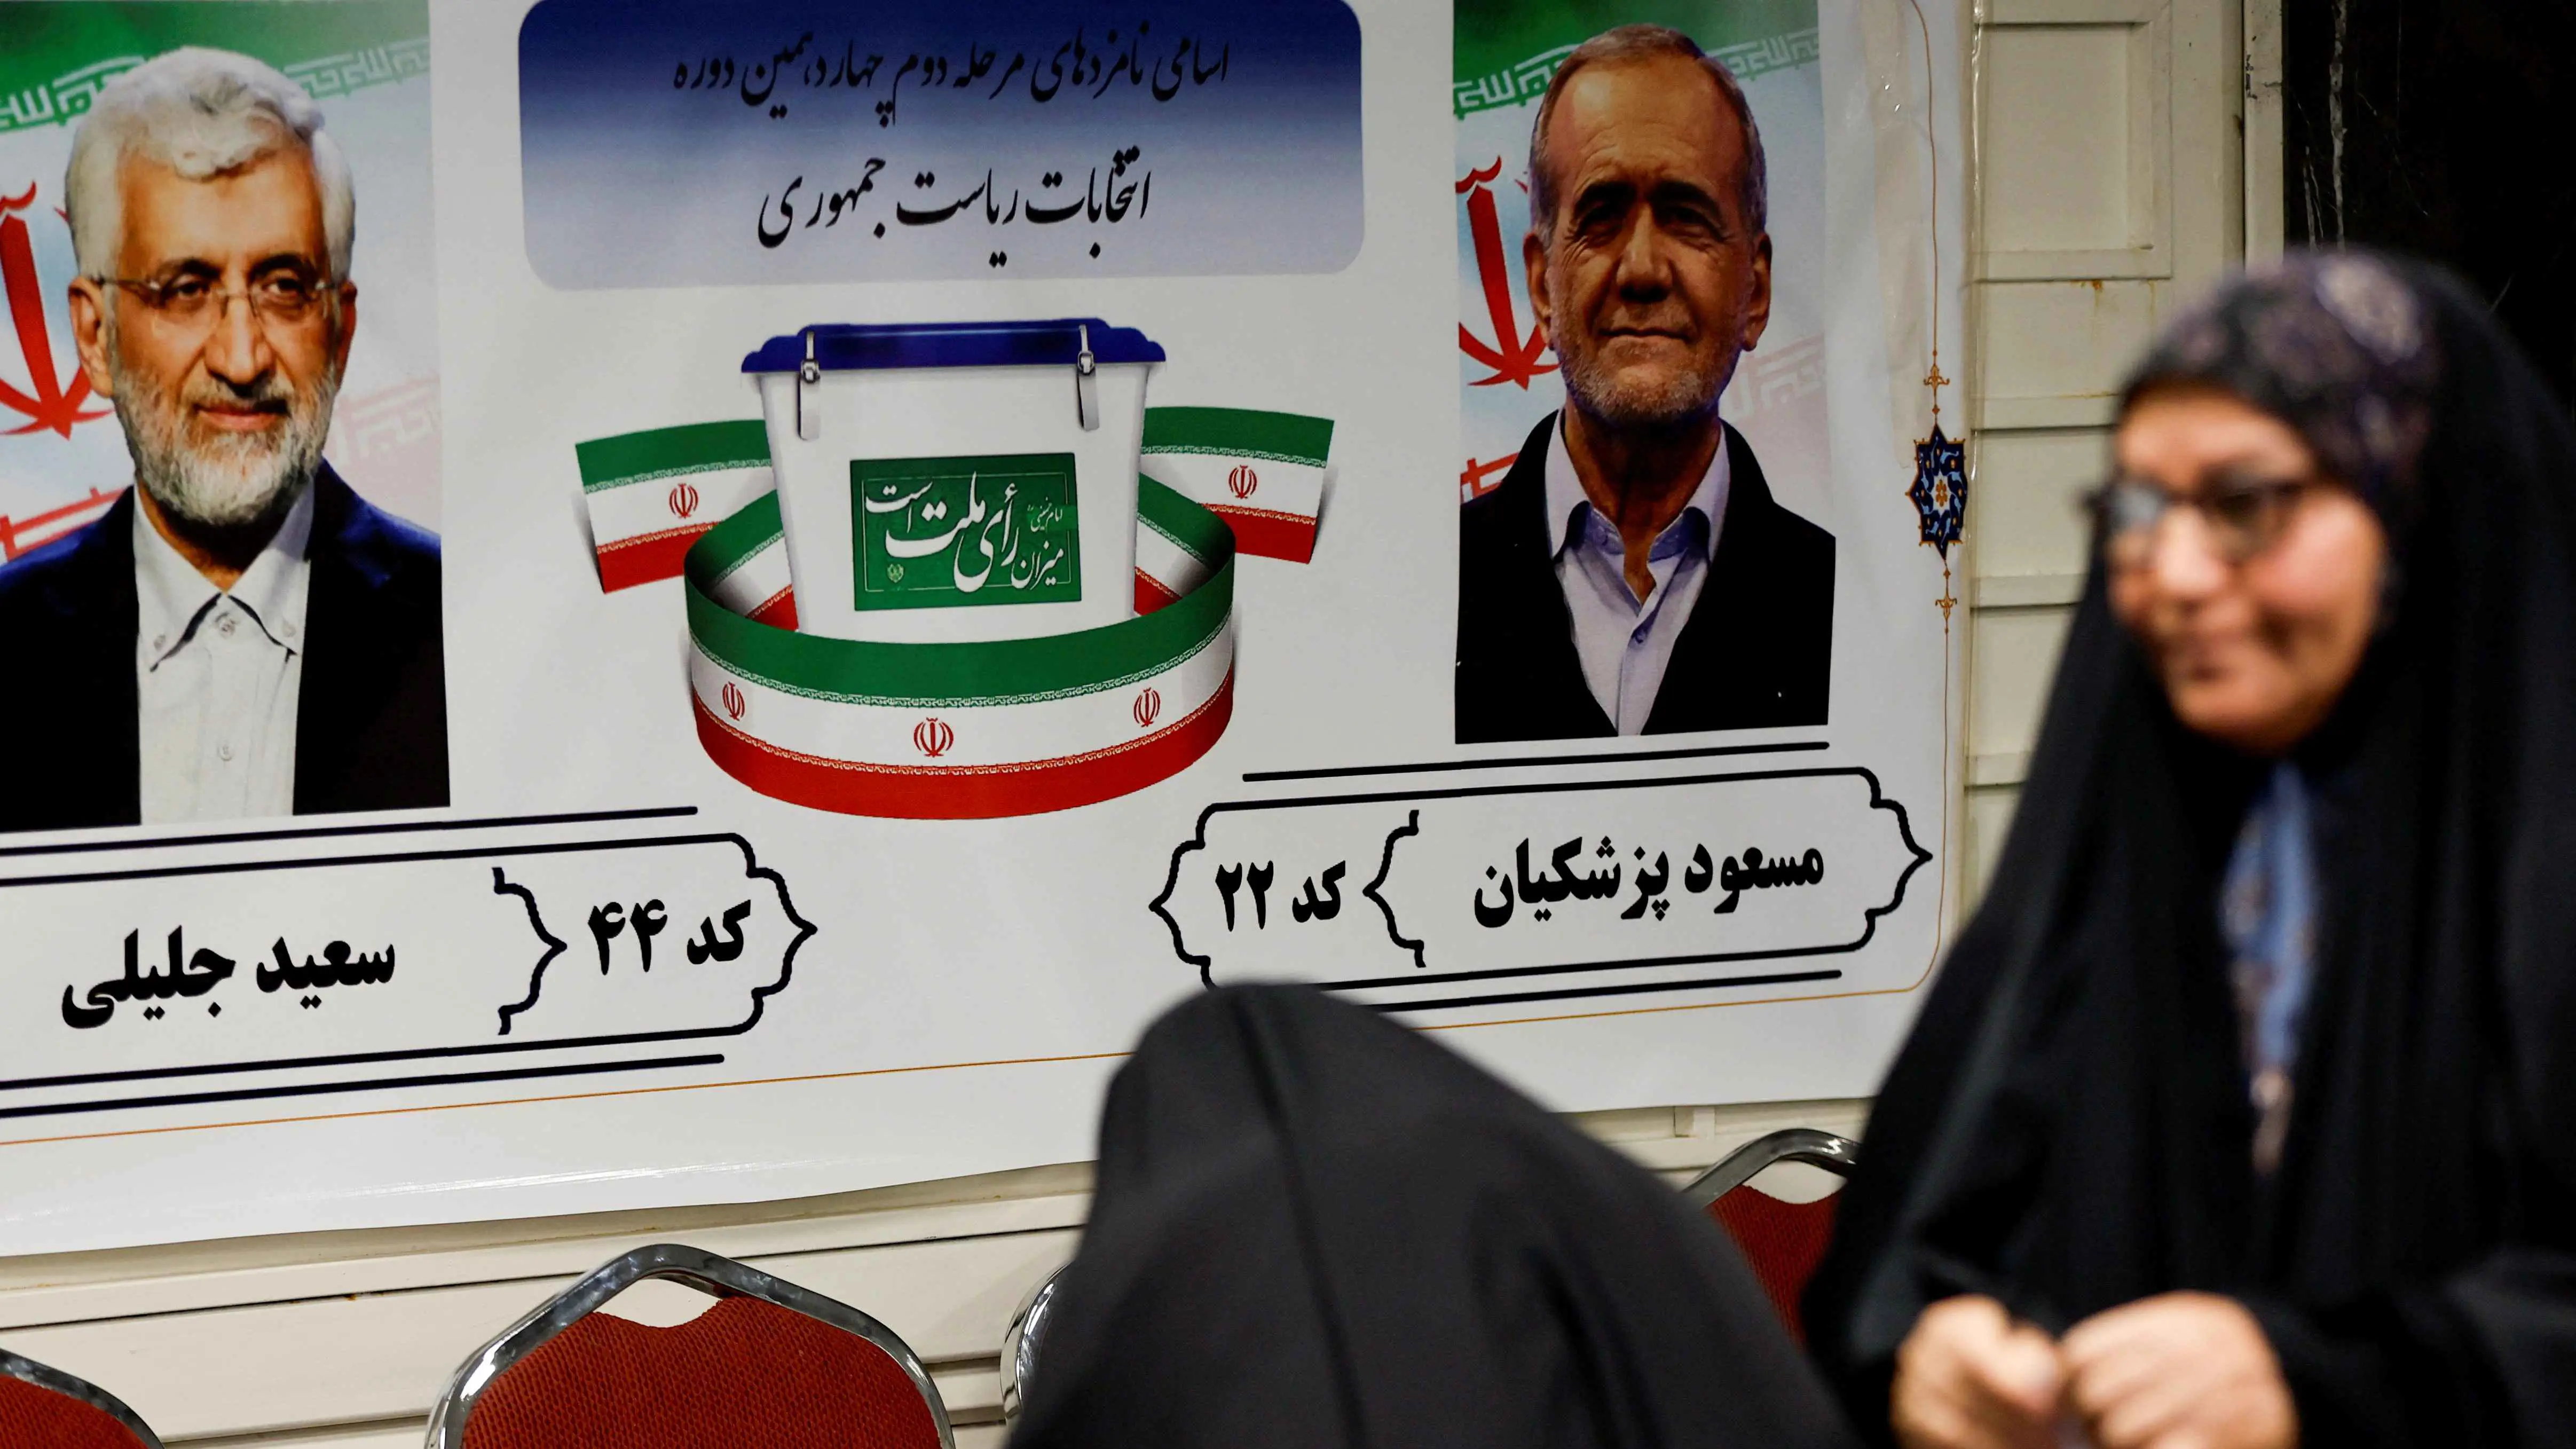 إعلام إيراني: بزشكيان يحصل على 54% من أصوات الناخبين